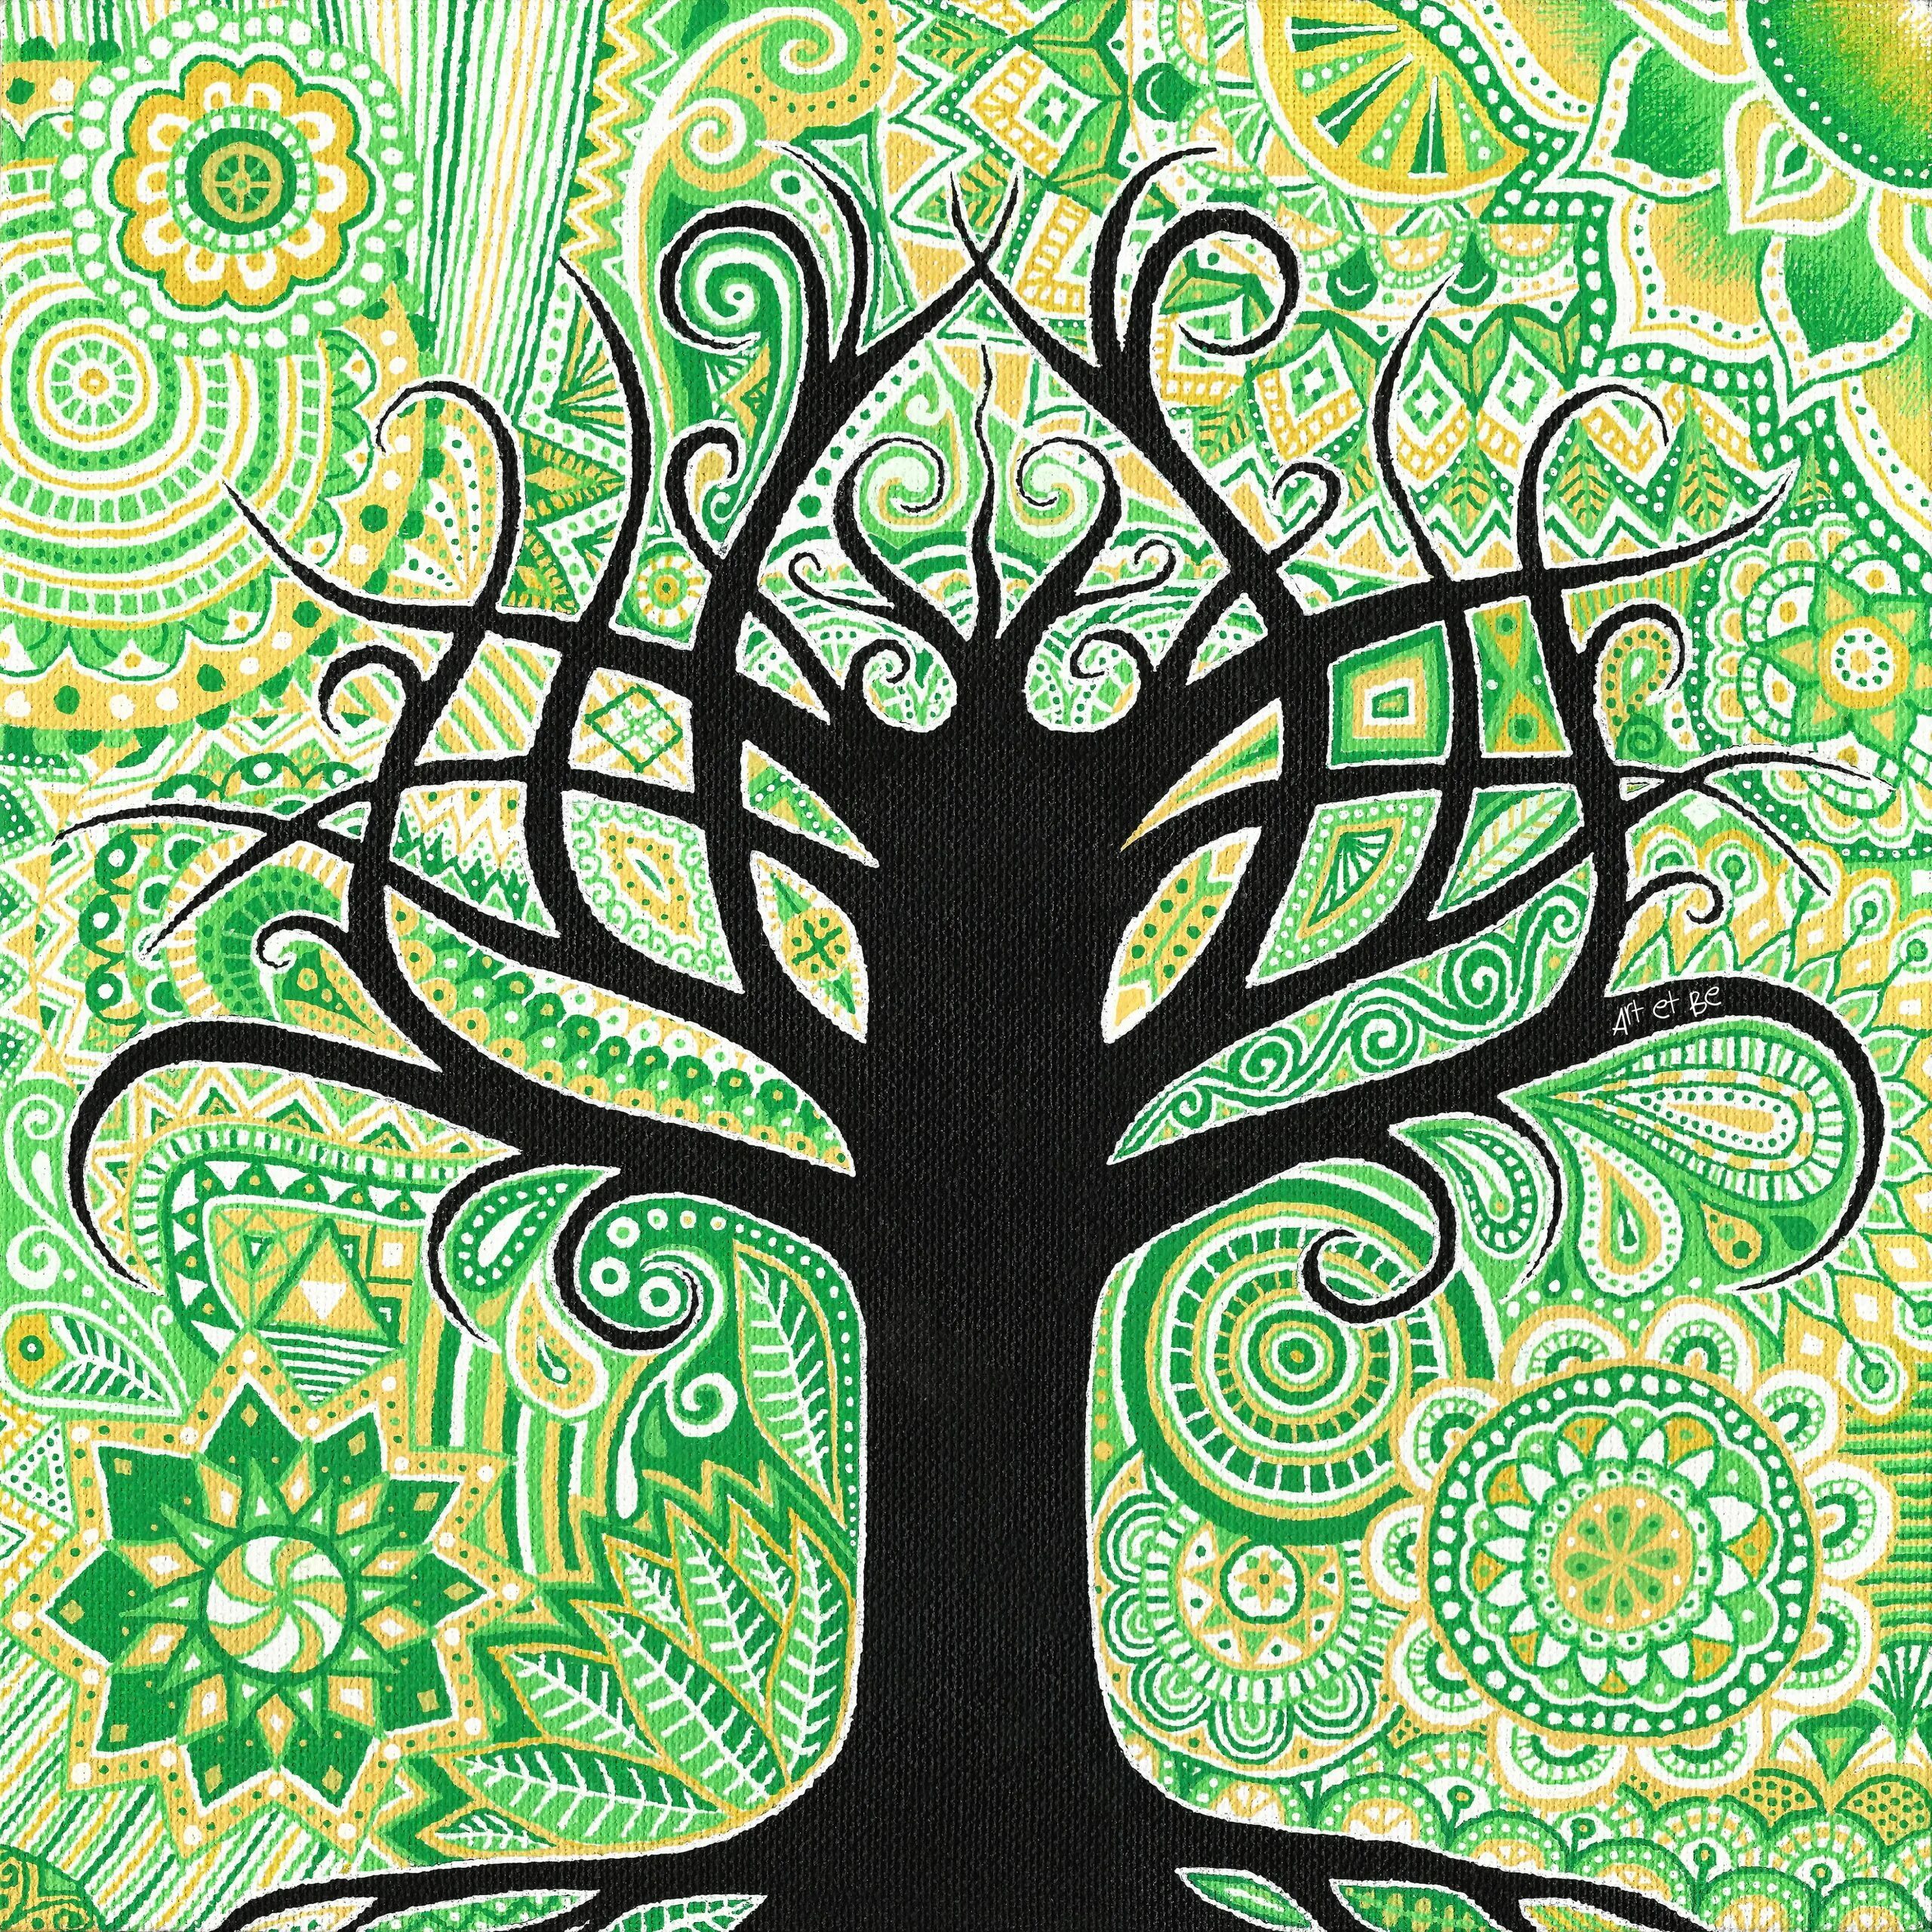 Ком дерево жизни. "Tree of Life" ("дерево жизни") by degree. Jsab Tree of Life. Усман дерево жизни. Картина дерево жизни в интерьере.